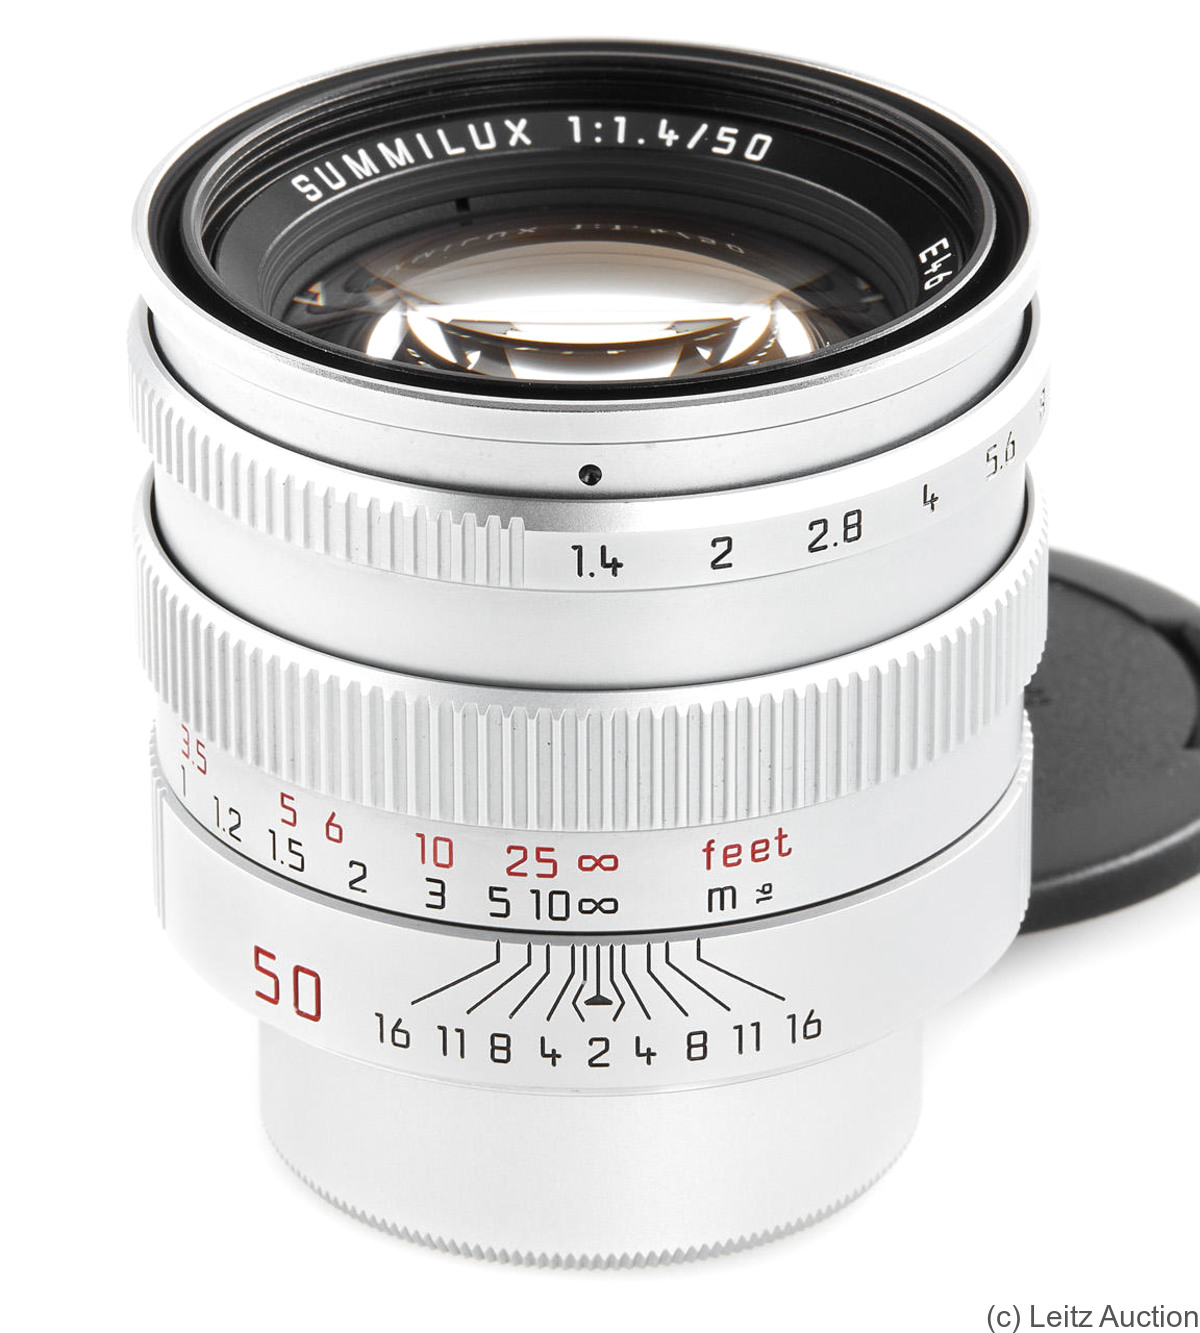 Leitz: 50mm (5cm) f1.4 Summilux (SM, 1992) camera